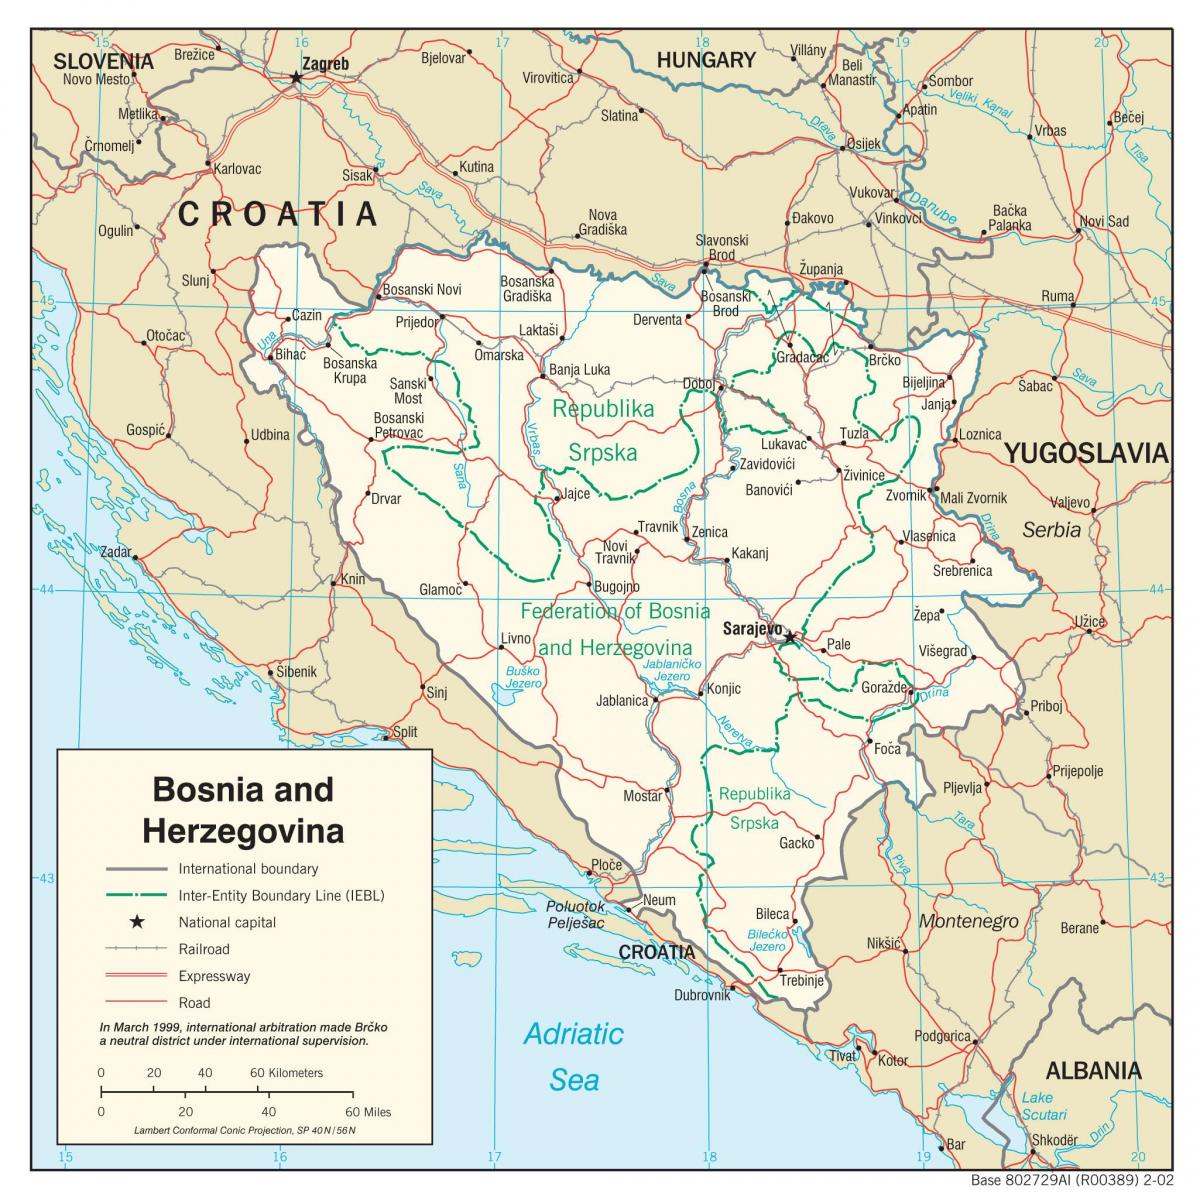 ბოსნია-ჰერცოგოვინა რუკა